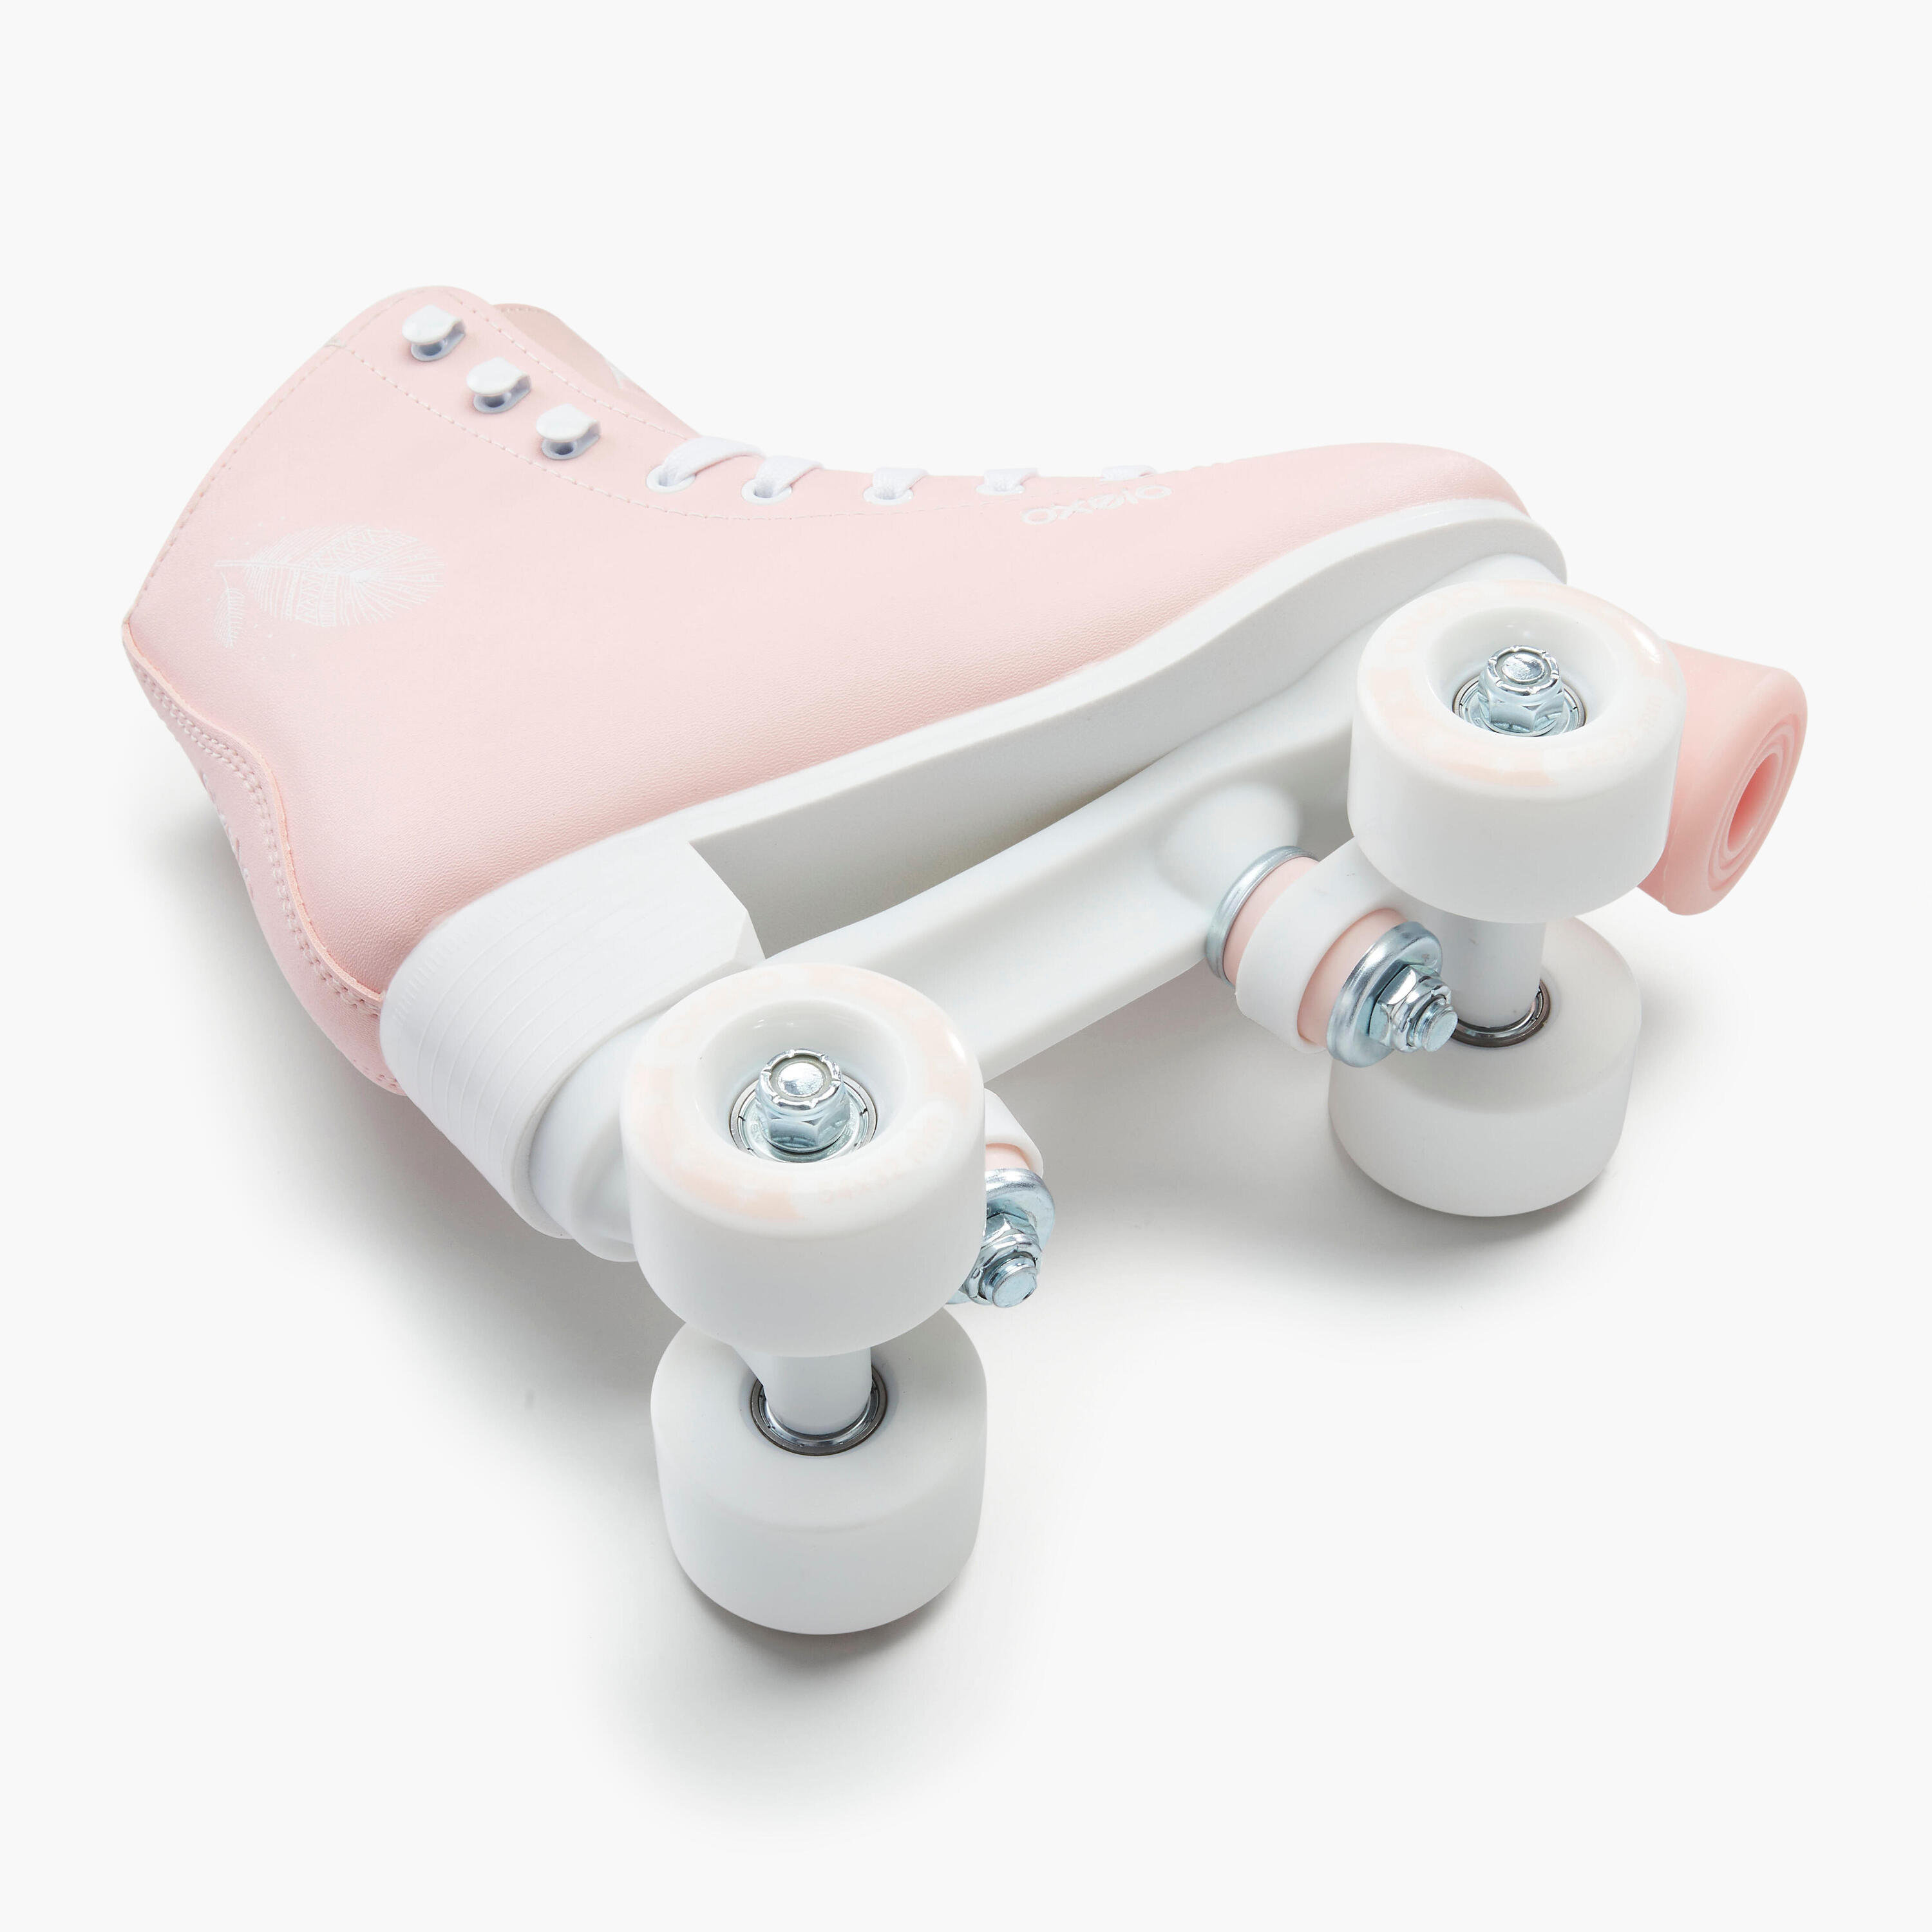 Kids' and Adult Artistic Roller Skating Quad Skates 100 - Pink 8/15